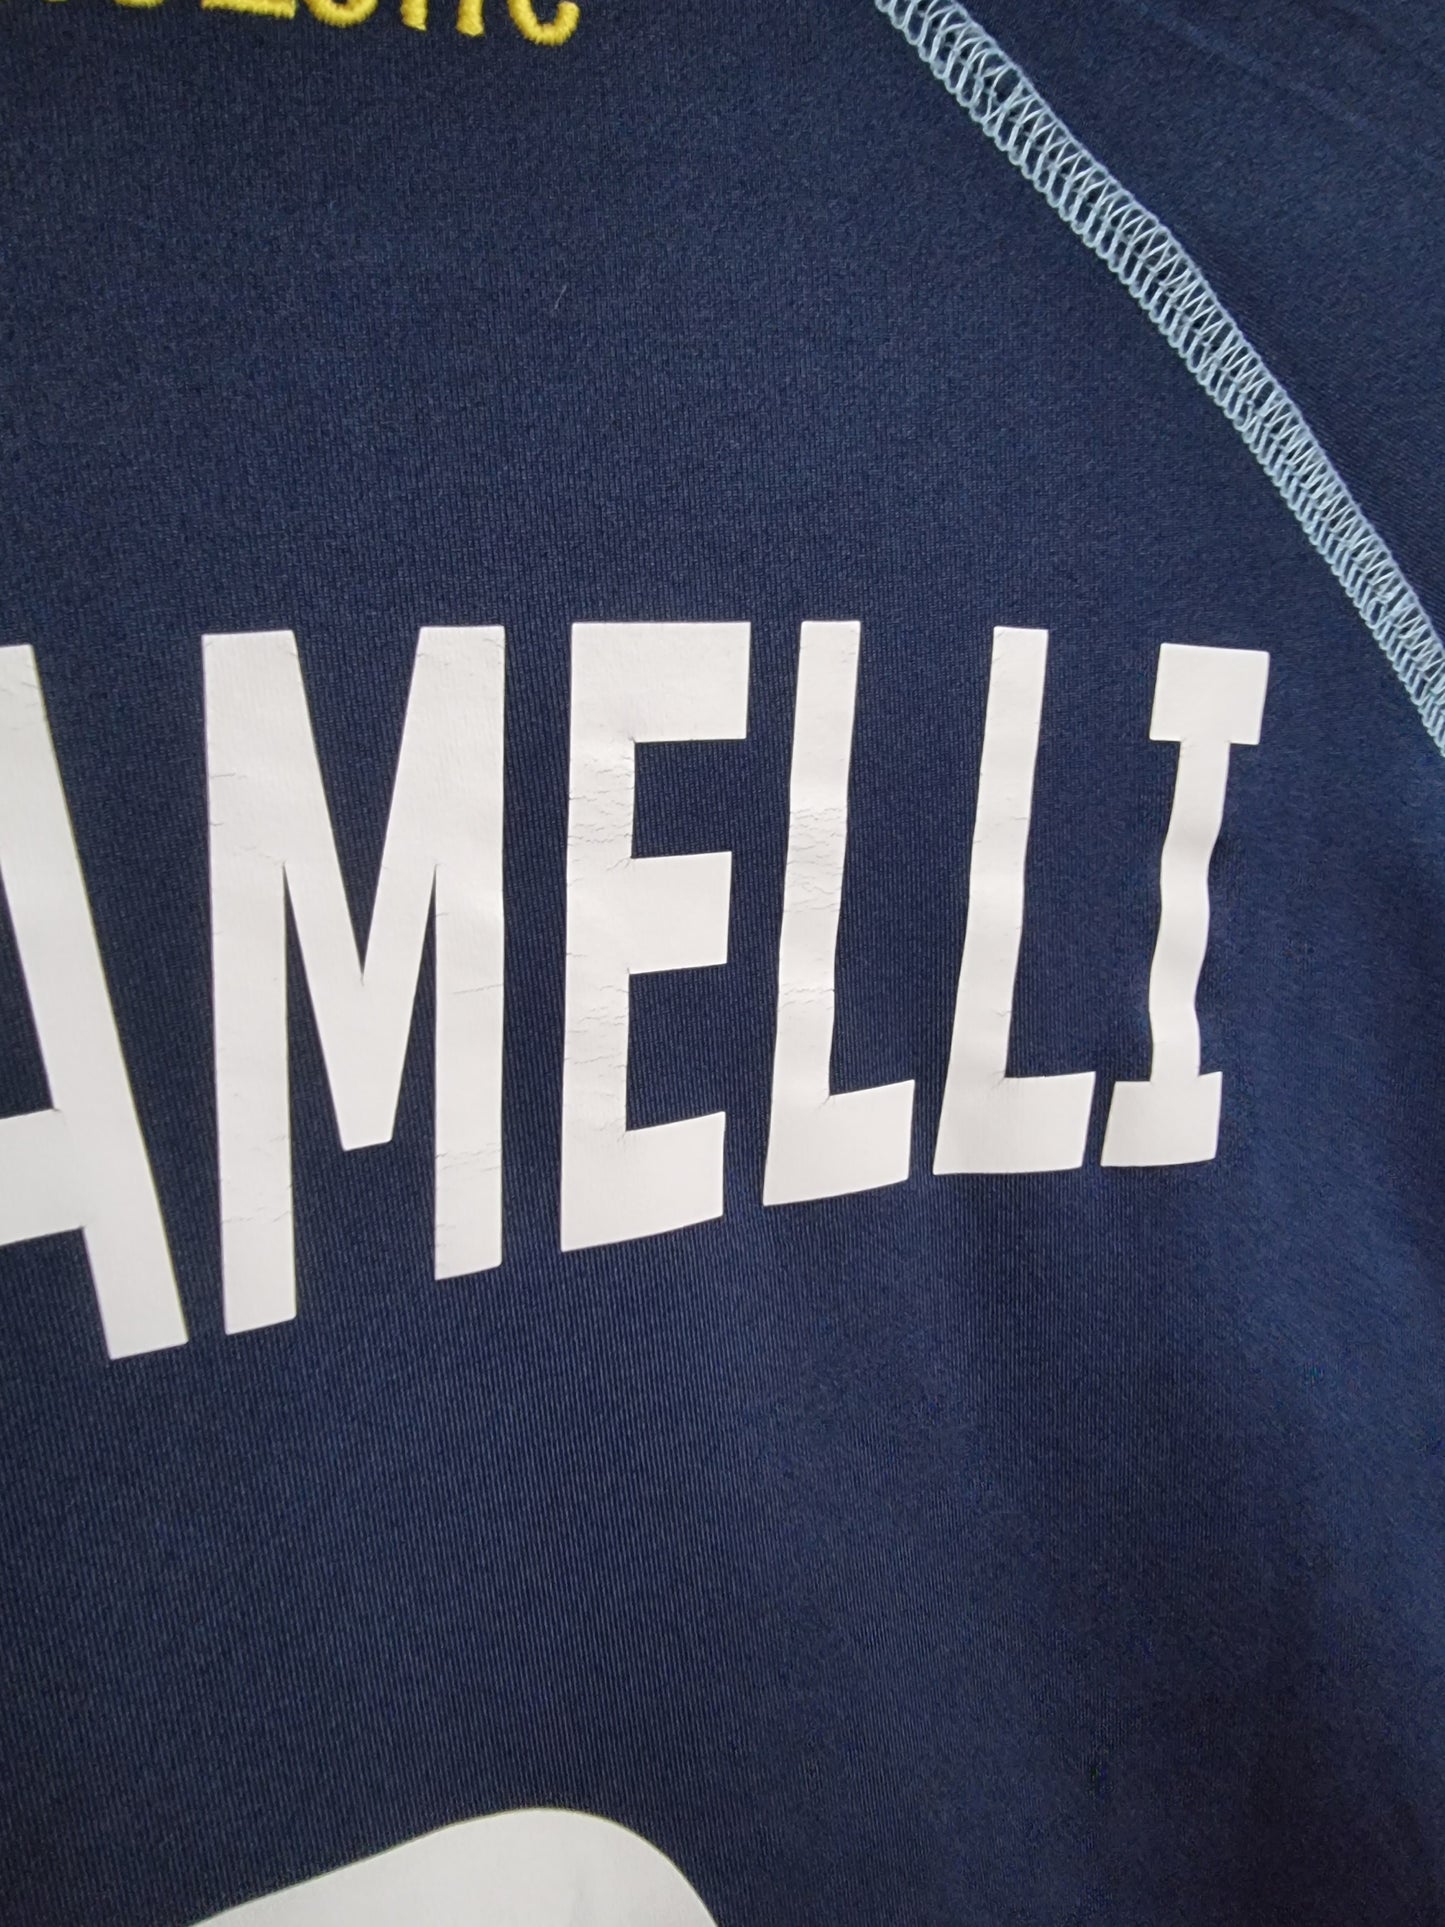 Acerbis Albinoleffe 10/11 'Bergamelli 3' Match Issue Away Shirt XL